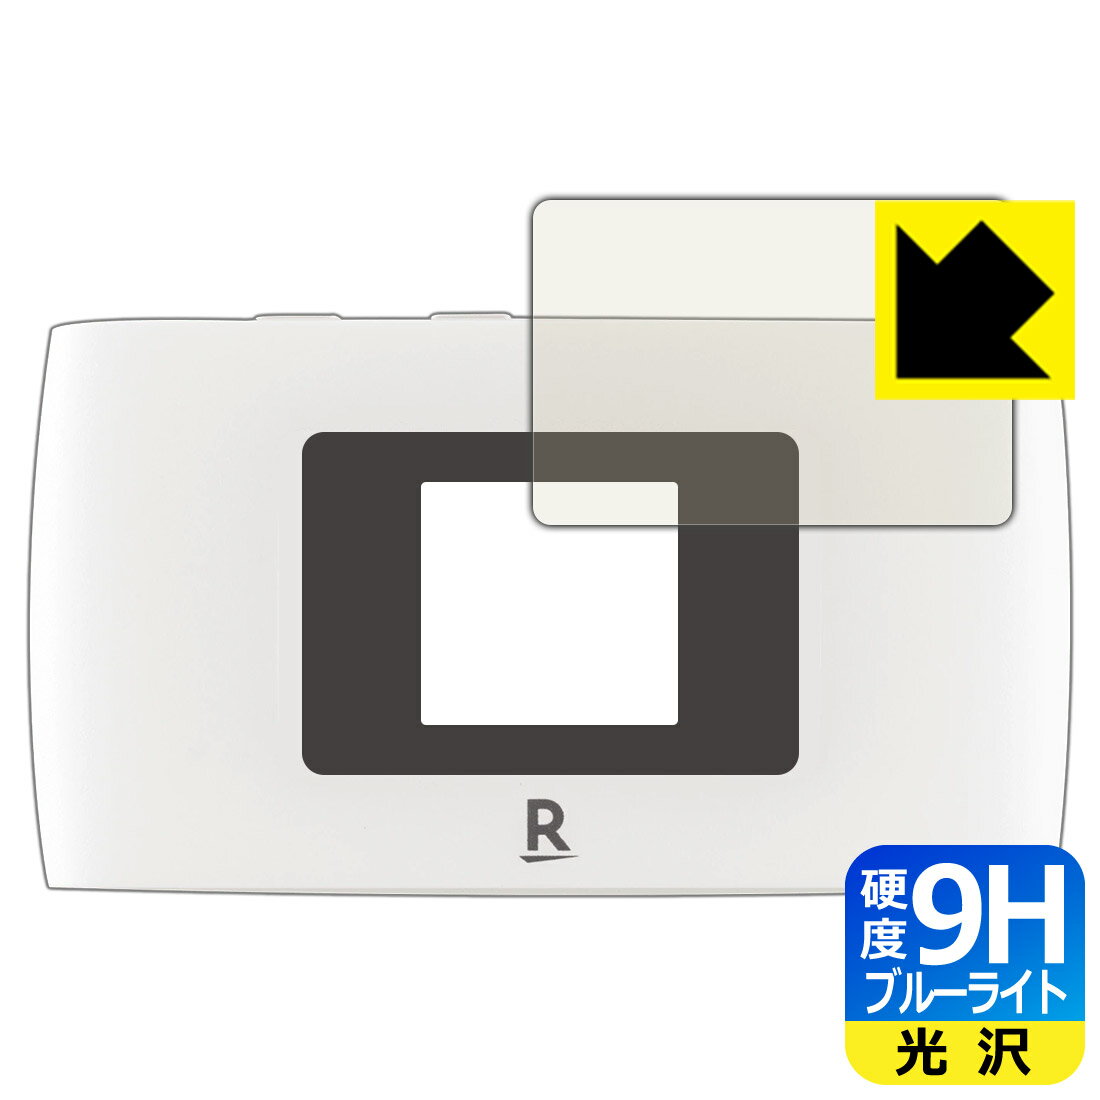 ●対応機種 : 楽天モバイル Rakuten WiFi Pocket 2B / Rakuten WiFi Pocket 2C専用の保護フィルムです。モバイルルーター本体ではありません。●製品内容 : 液晶用1枚●表面硬度9HのPETフィルムでブルーライトも大幅にカットする『9H高硬度【ブルーライトカット】保護フィルム』●安心の国産素材を使用。日本国内の自社工場で製造し出荷しています。【ポスト投函送料無料】商品は【ポスト投函発送 (追跡可能メール便)】で発送します。お急ぎ、配達日時を指定されたい方は以下のクーポンを同時購入ください。【お急ぎ便クーポン】　プラス110円(税込)で速達扱いでの発送。お届けはポストへの投函となります。【配達日時指定クーポン】　プラス550円(税込)で配達日時を指定し、宅配便で発送させていただきます。【お急ぎ便クーポン】はこちらをクリック【配達日時指定クーポン】はこちらをクリック 　 表面硬度はガラスフィルムと同等の9Hですが、しなやかな柔軟性がある「超ハードコートPETフィルム」なので衝撃を受けても割れません。厚みも一般的なガラスフィルムより薄い約0.2mmでタッチ操作の感度も良好です。(※1) 液晶画面のLEDバックライトから発せられる「ブルーライト」は可視光線の中で最も刺激が強く、目や身体に悪影響があるのではないかといわれています。 このフィルムは、画面に貼りつけるだけで380～495nmの「ブルーライト」を大幅にカットしますので、仕事や遊びで、長時間液晶画面を使用する方や、目の疲れが気になる方にオススメです。 「ブルーライトカット機能付きPCメガネ」などをかけることなく、「ブルーライト」をカットすることができますので、メガネを持ち歩く必要もなく便利です。 ※全光線透過率：92% ※この製品は、ほぼ透明(非常に僅かな色)です。 従来のブルーライトカットフィルムは、映像の色調などが変わる場合もありましたが、このフィルムはほぼ透明(非常に僅かな色)となっており、色調もほとんど変わりません。全光線透過率も92%と、非常に高い光沢タイプです。 表面はフッ素コーティングがされており、皮脂や汚れがつきにくく、また、落ちやすくなっています。指滑りもなめらかで、快適な使用感です。 油性マジックのインクもはじきますので簡単に拭き取れます。 接着面は気泡の入りにくい特殊な自己吸着タイプです。素材に柔軟性があり、貼り付け作業も簡単にできます。また、はがすときにガラス製フィルムのように割れてしまうことはありません。 貼り直しが何度でもできるので、正しい位置へ貼り付けられるまでやり直すことができます。 最高級グレードの国産素材を日本国内の弊社工場で加工している完全な Made in Japan です。安心の品質をお届けします。 ※1「表面硬度 9H」の表示は素材として使用しているフィルムの性能です。機器に貼り付けた状態の測定結果ではありません。 使用上の注意 ●本製品は機器の画面をキズなどから保護するフィルムです。他の目的にはご使用にならないでください。 ●本製品は液晶保護および機器本体を完全に保護することを保証するものではありません。機器の破損、損傷、故障、その他損害につきましては一切の責任を負いかねます。 ●製品の性質上、画面操作の反応が変化したり、表示等が変化して見える場合がございます。 ●貼り付け作業時の失敗(位置ズレ、汚れ、ゆがみ、折れ、気泡など)および取り外し作業時の破損、損傷などについては、一切の責任を負いかねます。 ●水に濡れた状態でのご使用は吸着力の低下などにより、保護フィルムがはがれてしまう場合がございます。防水対応の機器でご使用の場合はご注意ください。 ●アルコール類やその他薬剤を本製品に付着させないでください。表面のコーティングや吸着面が変質するおそれがあります。 ●品質向上のため、仕様などを予告なく変更する場合がございますので、予めご了承ください。